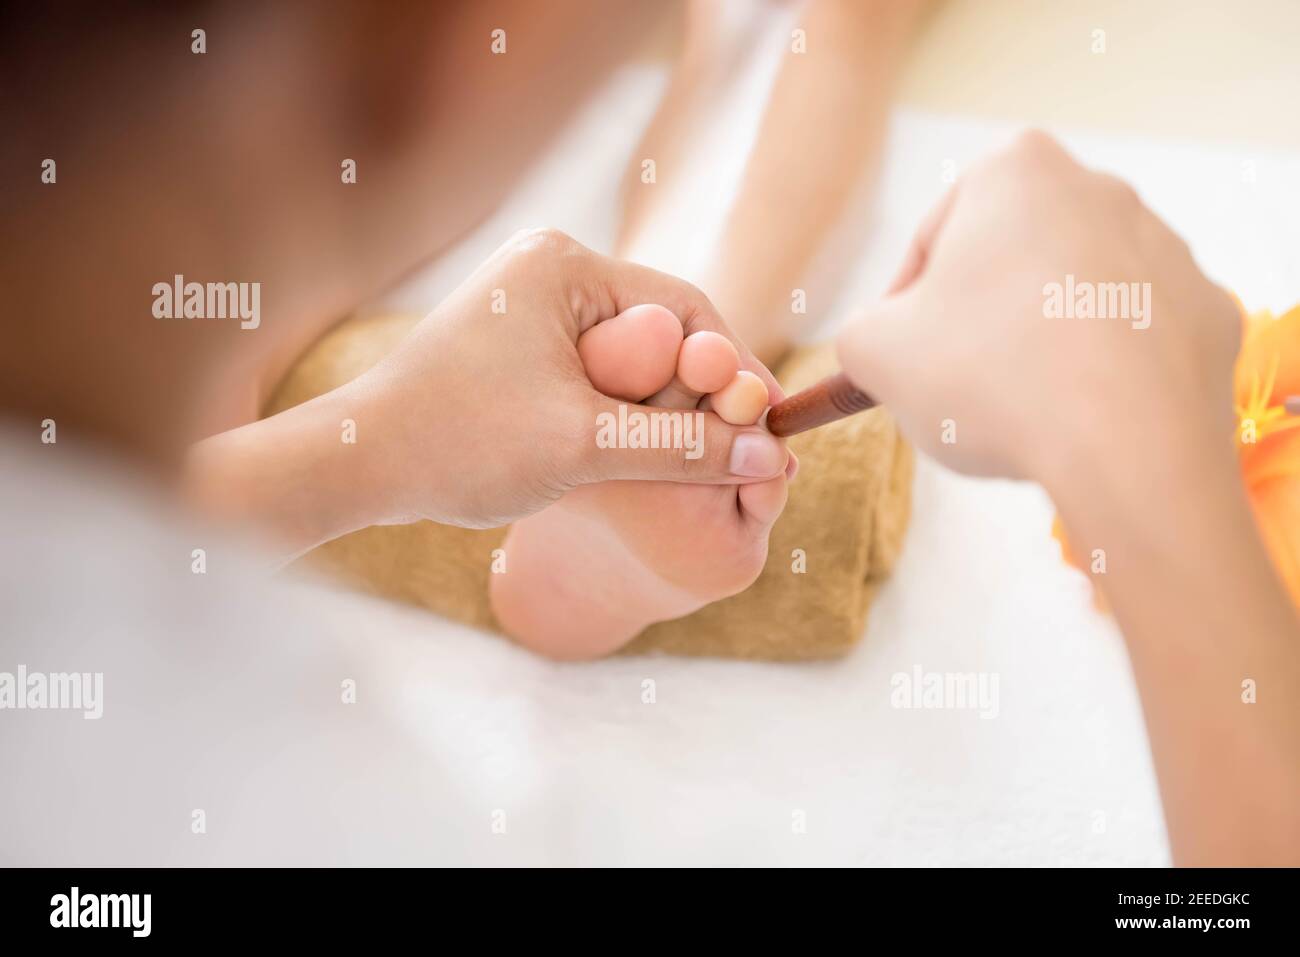 Un cliente che riceve un massaggio thailandese del piede con riflessologia e aromaterapia. Foto Stock